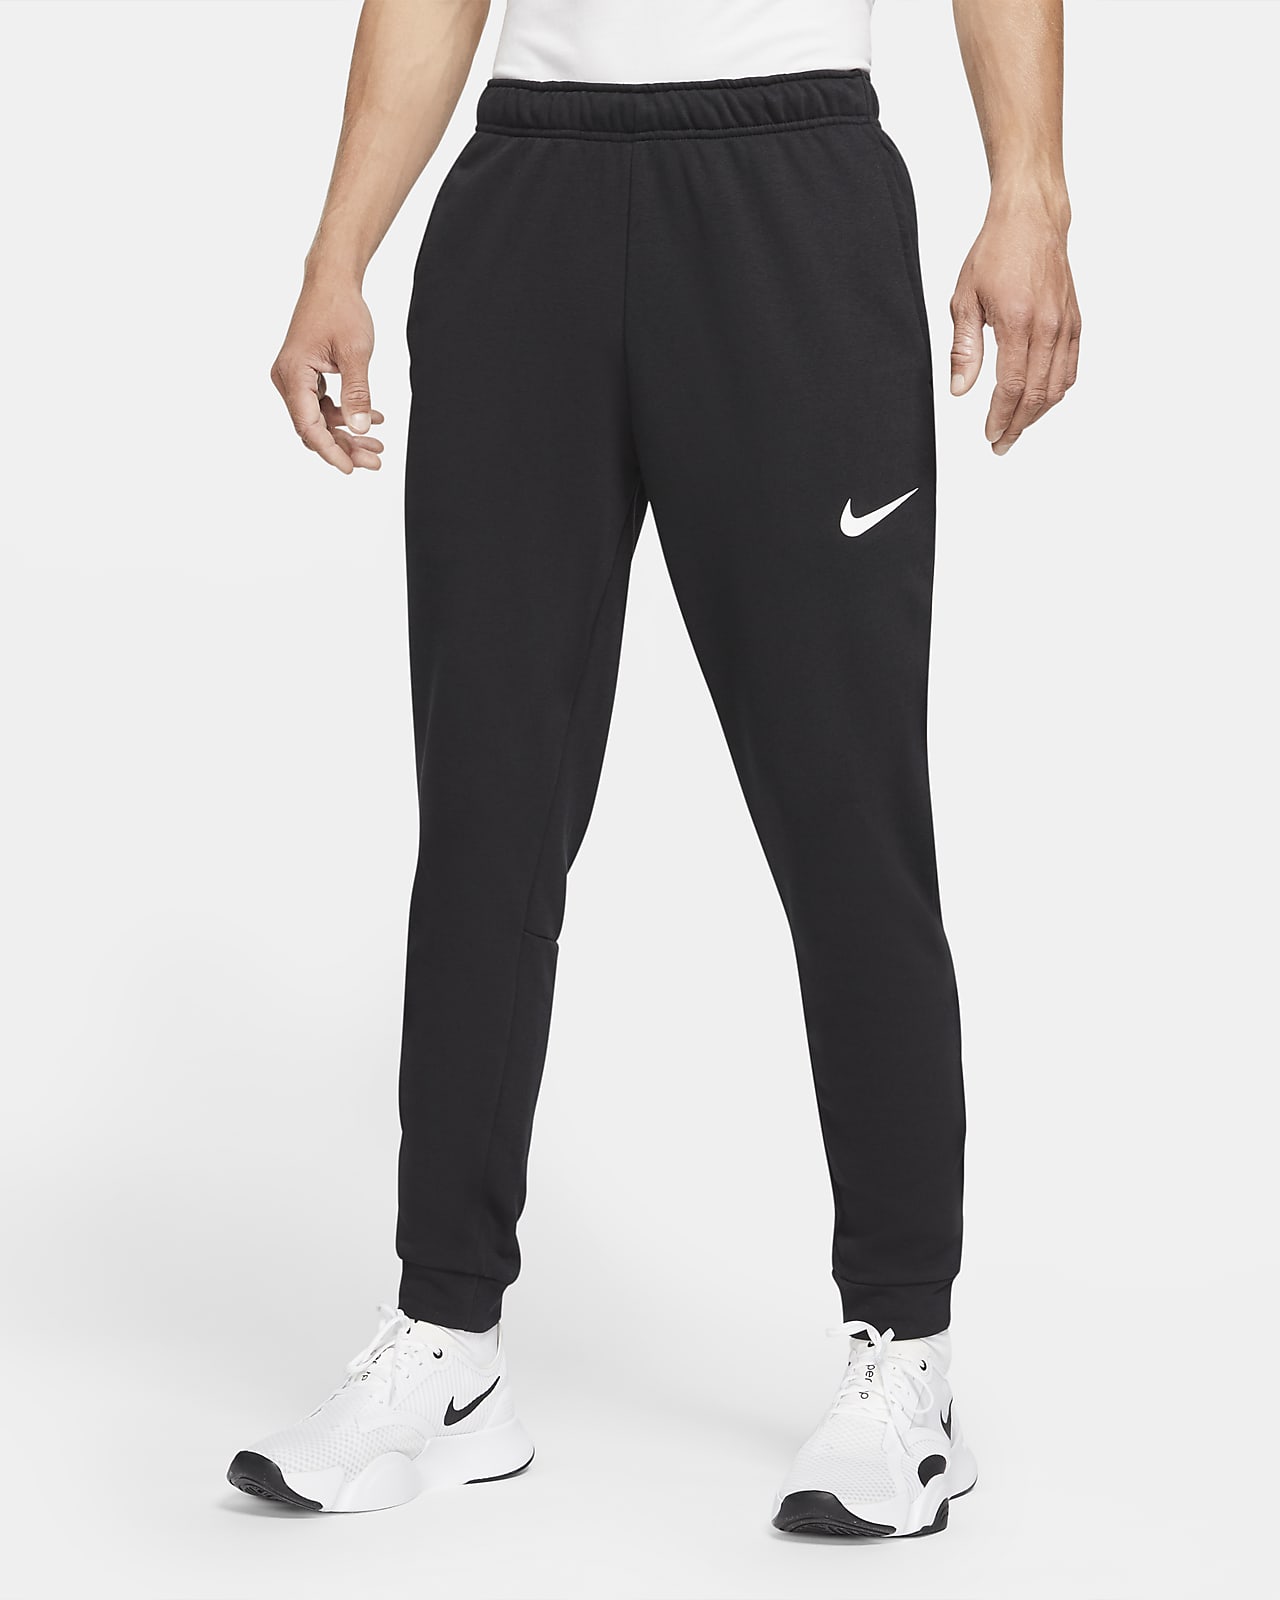 Pantalon de fitness fuselé en tissu Fleece Dri-FIT Nike Dry pour homme